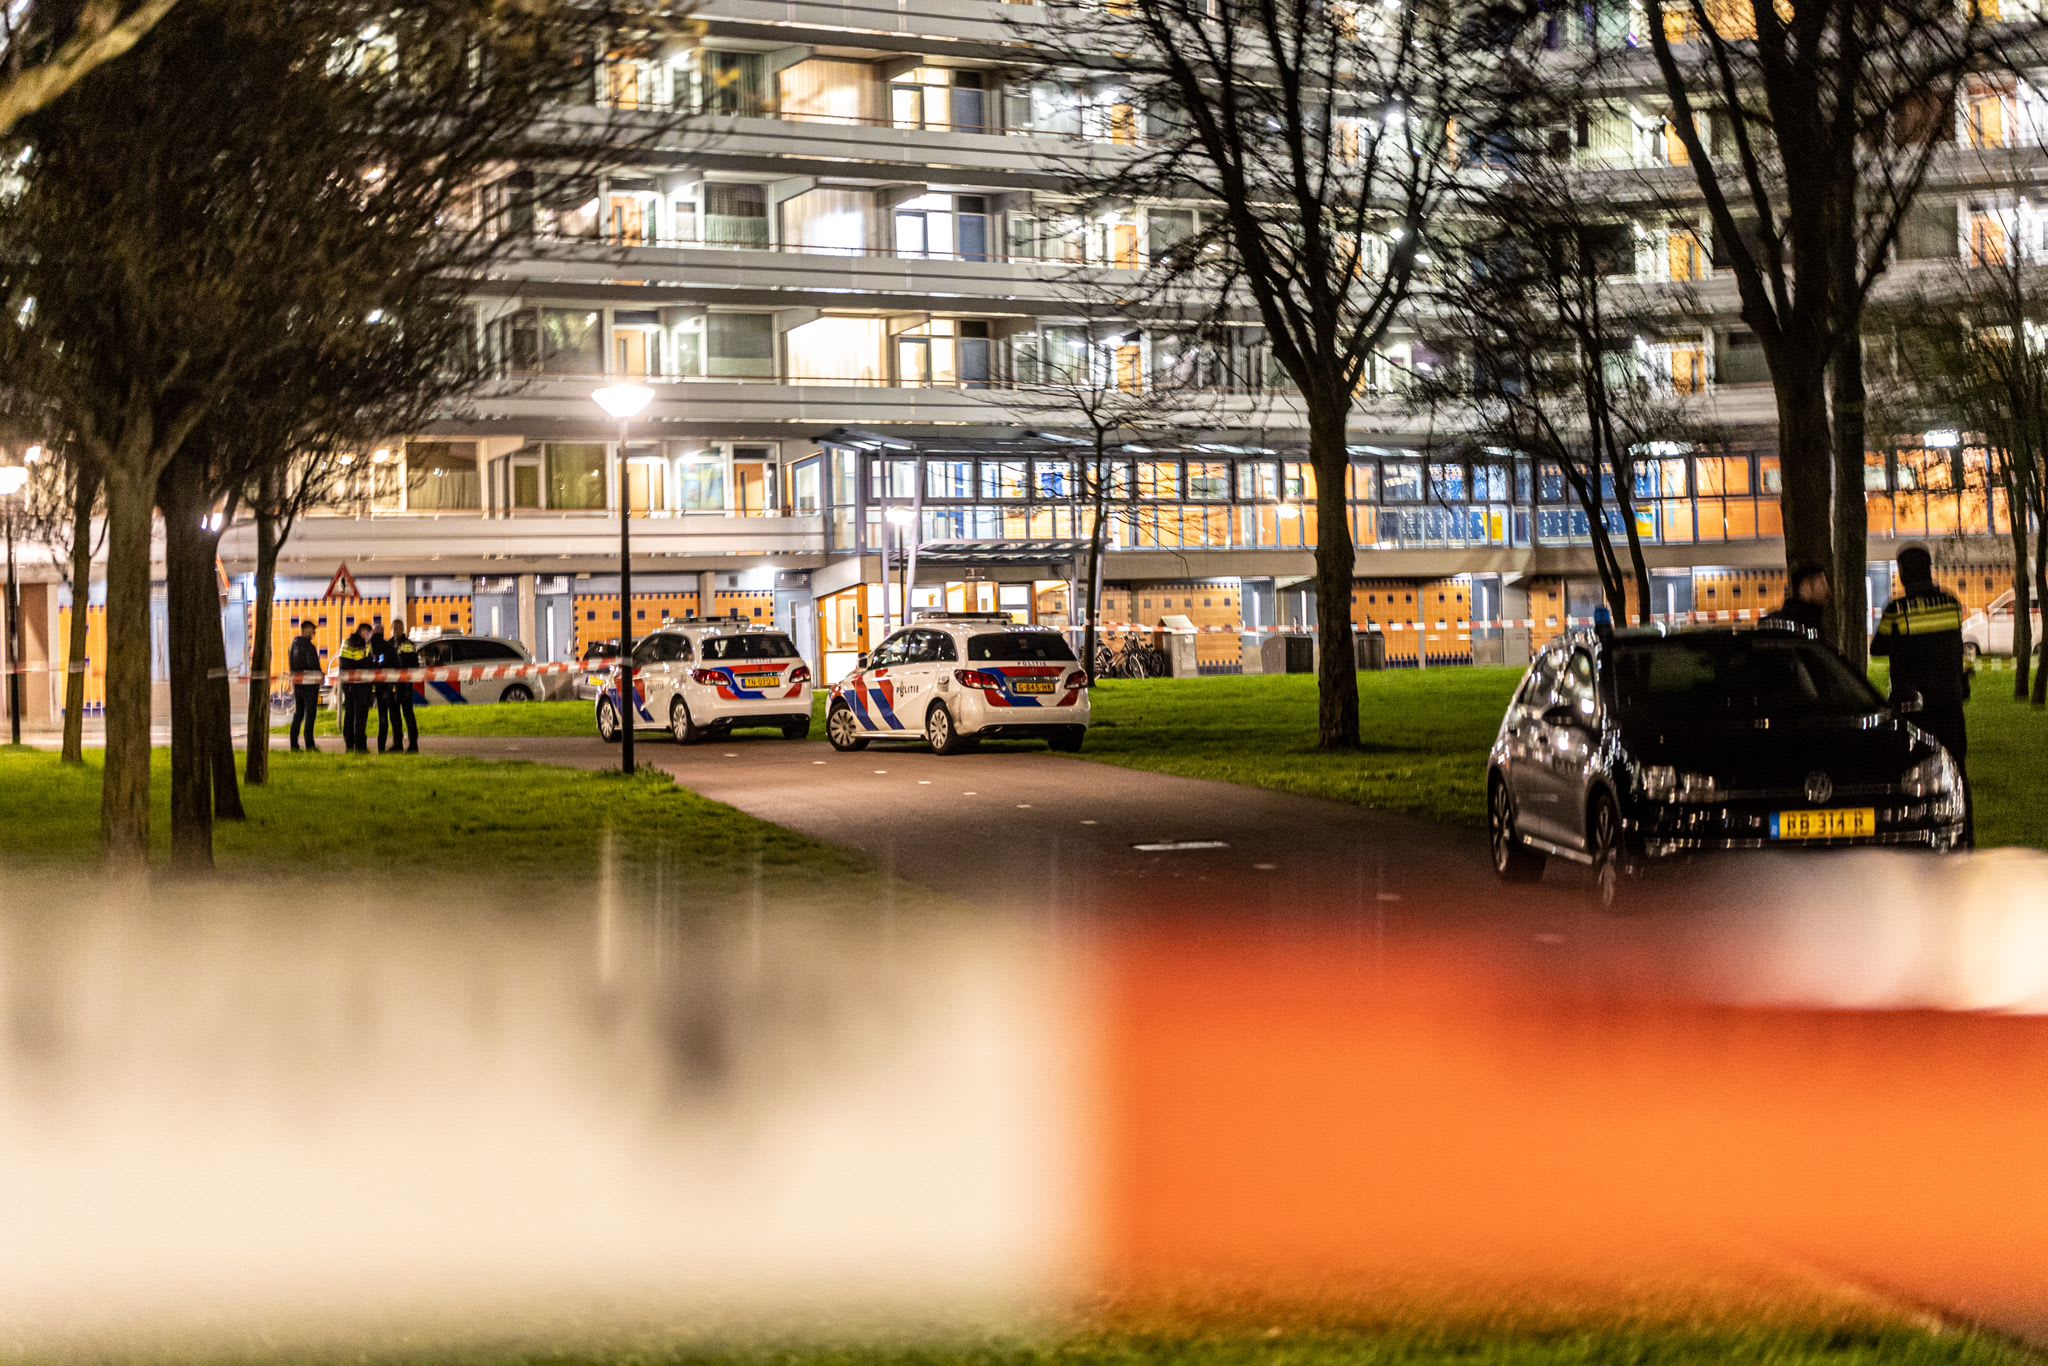 Politie schiet gericht bij aanhouding jonge overvallers Amsterdam